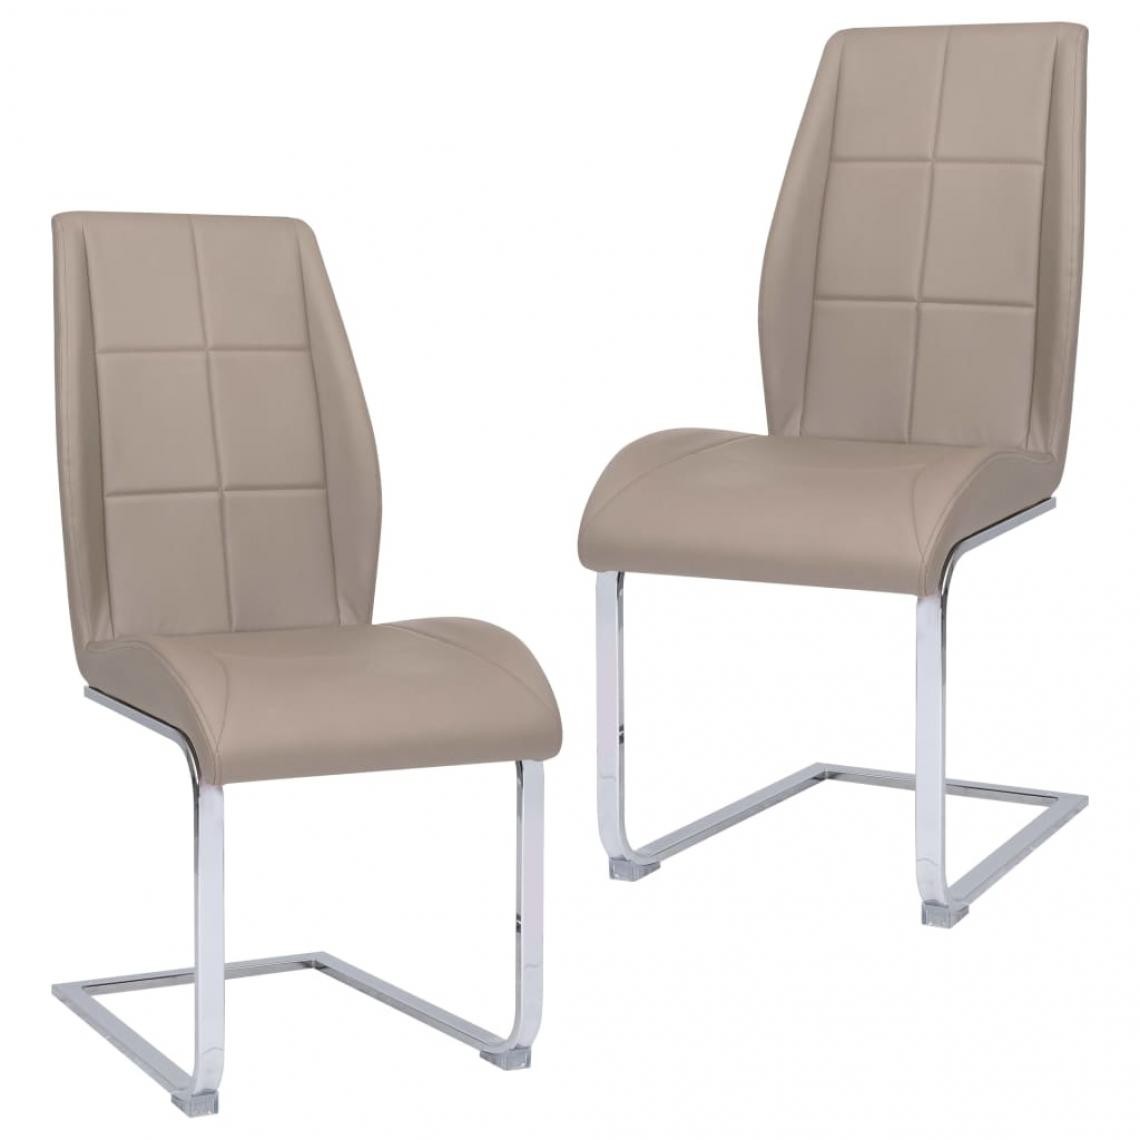 Decoshop26 - Lot de 2 chaises de salle à manger cuisine cantilever design intemporel tissu cappuccino CDS020312 - Chaises